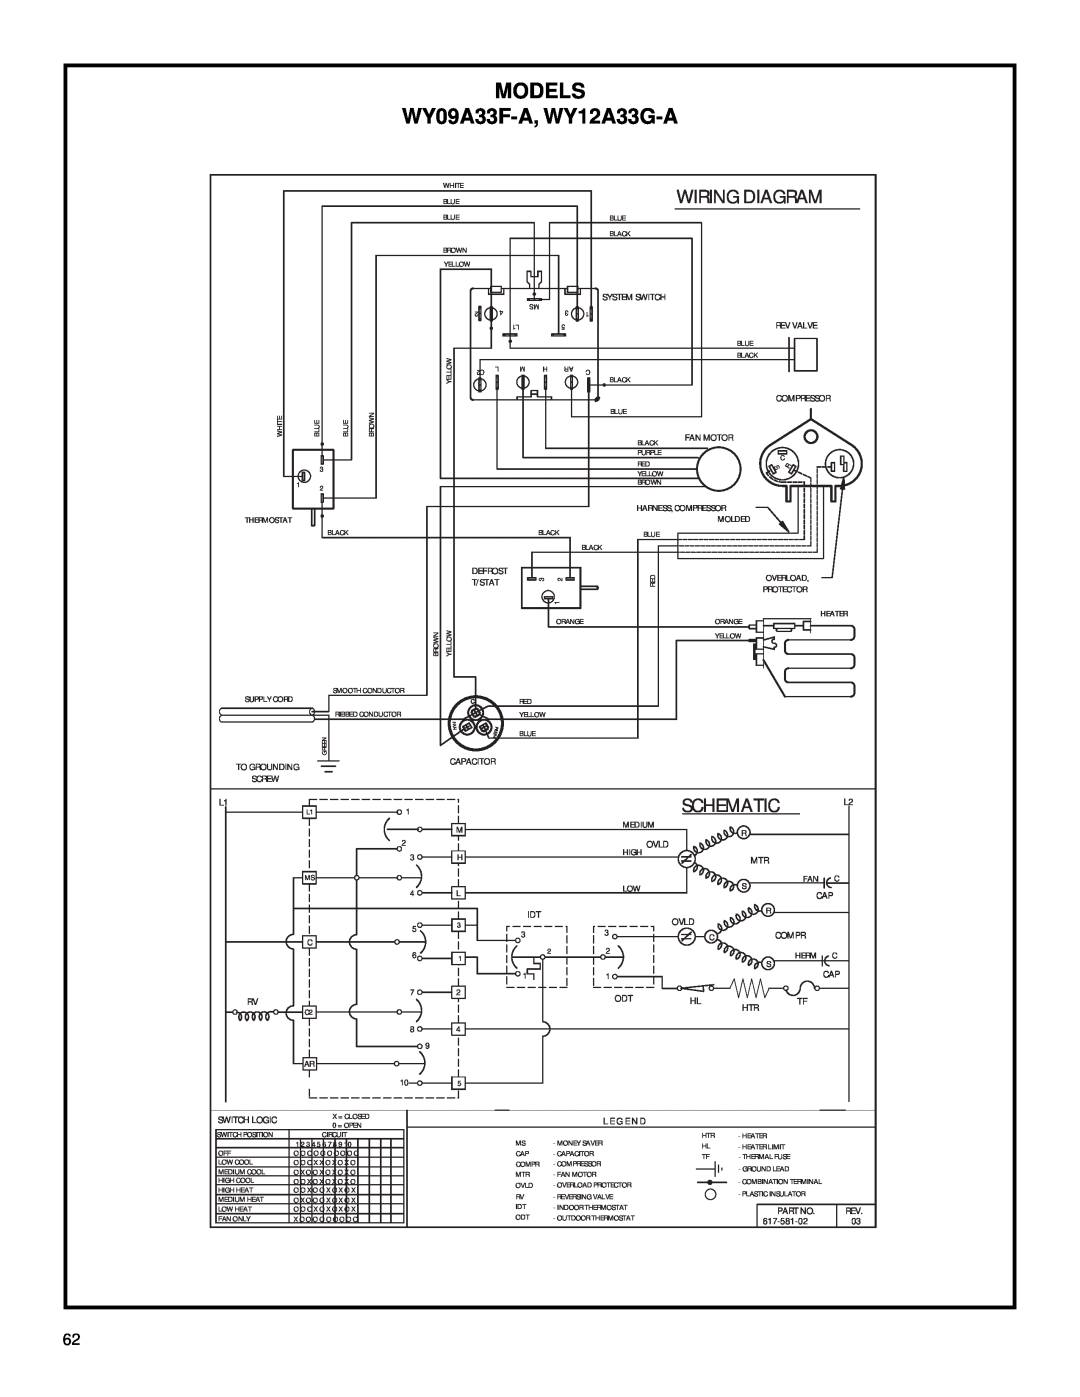 Friedrich 2003 service manual WY09A33F-A, WY12A33G-A, Models, Wiring Diagram, Schematic 